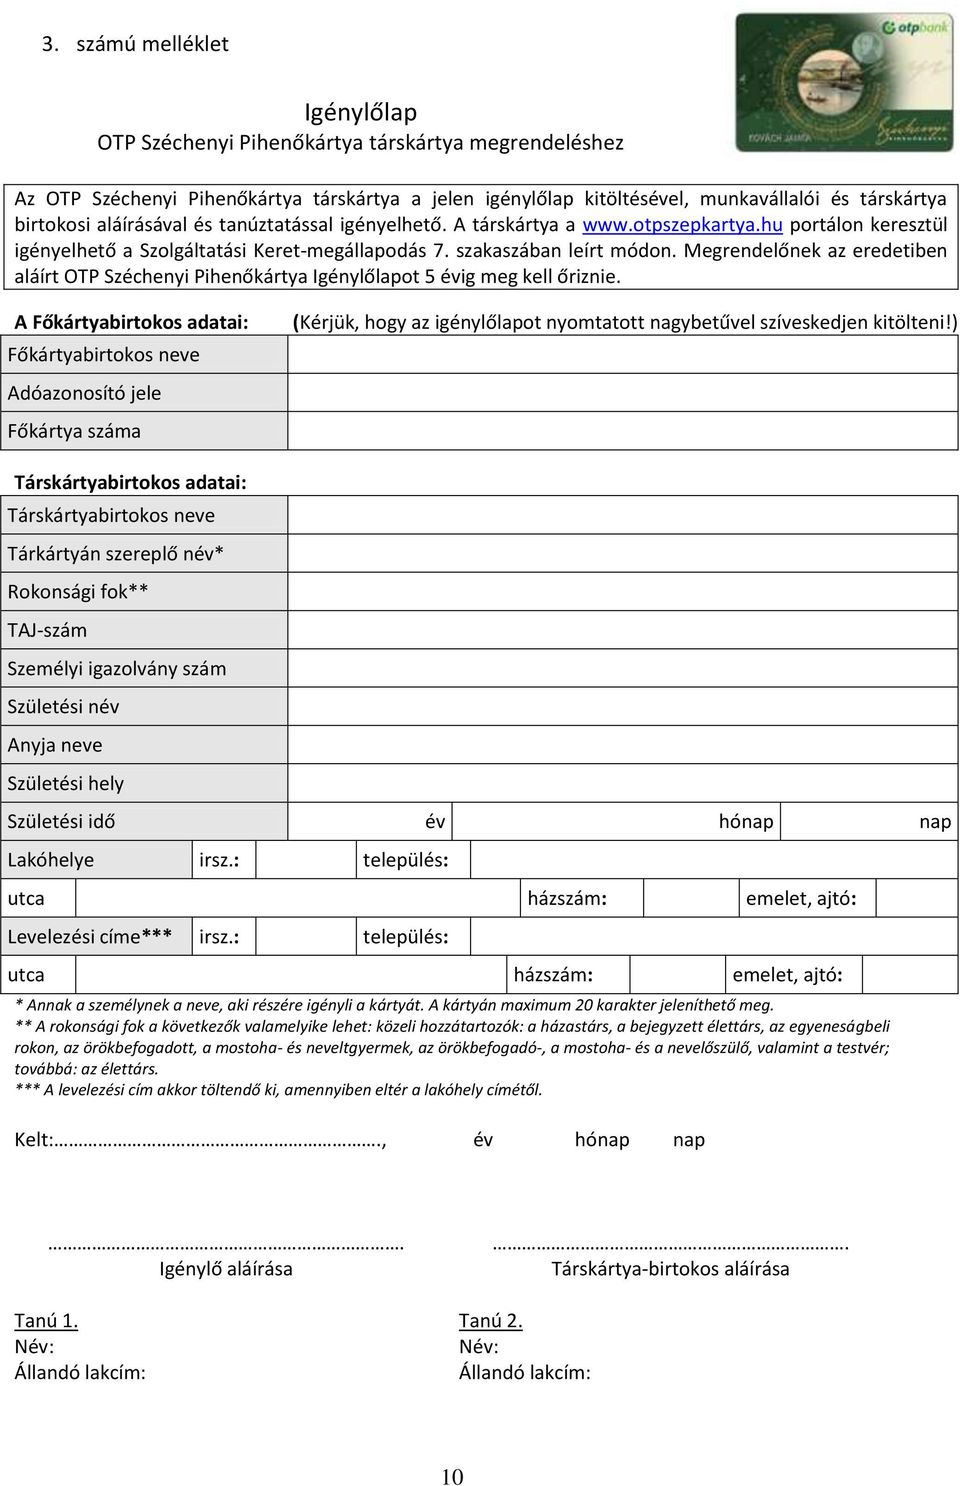 SZOLGÁLTATÁSI KERET-MEGÁLLAPODÁS (OTP Széchenyi Pihenőkártya és  elektronikus-utalvány megrendelésről) - PDF Ingyenes letöltés